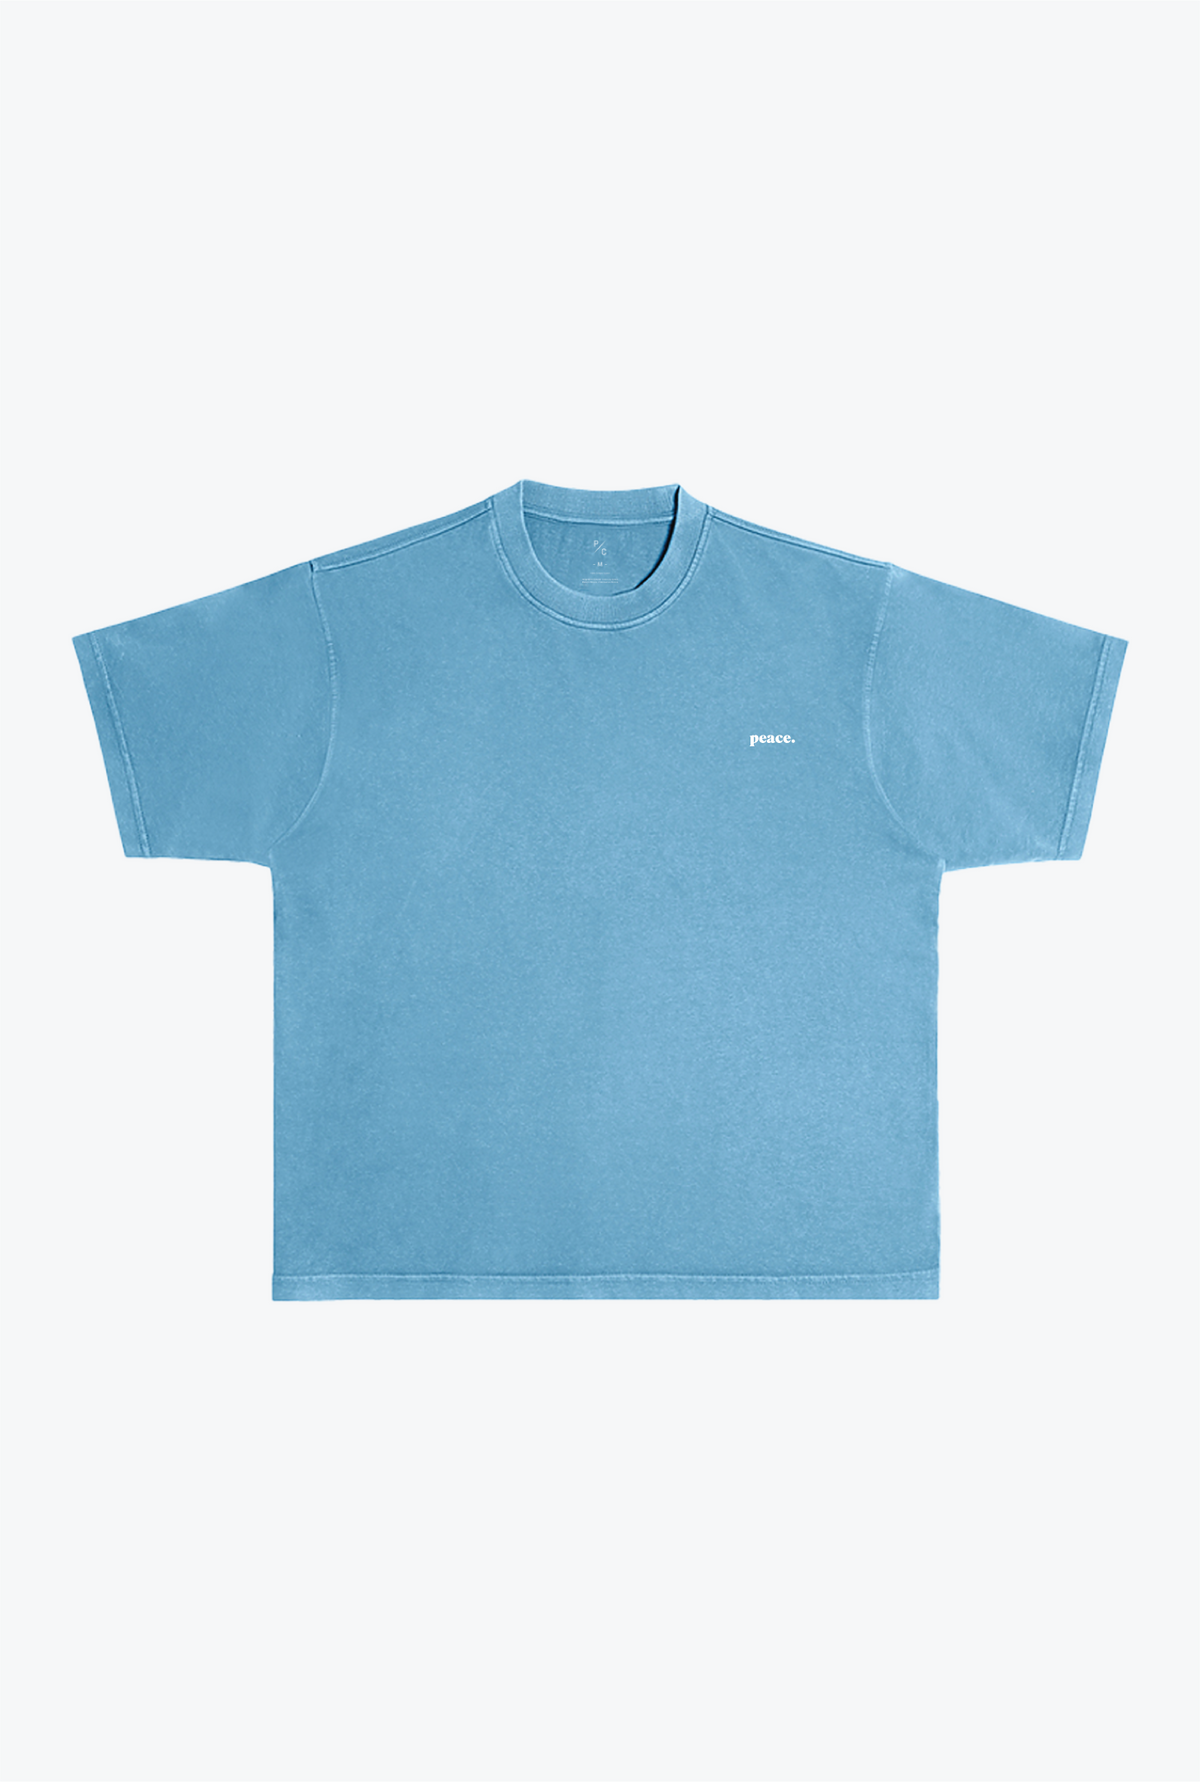 P/C Basics Pigment Dye T Shirt - Pebble Blue